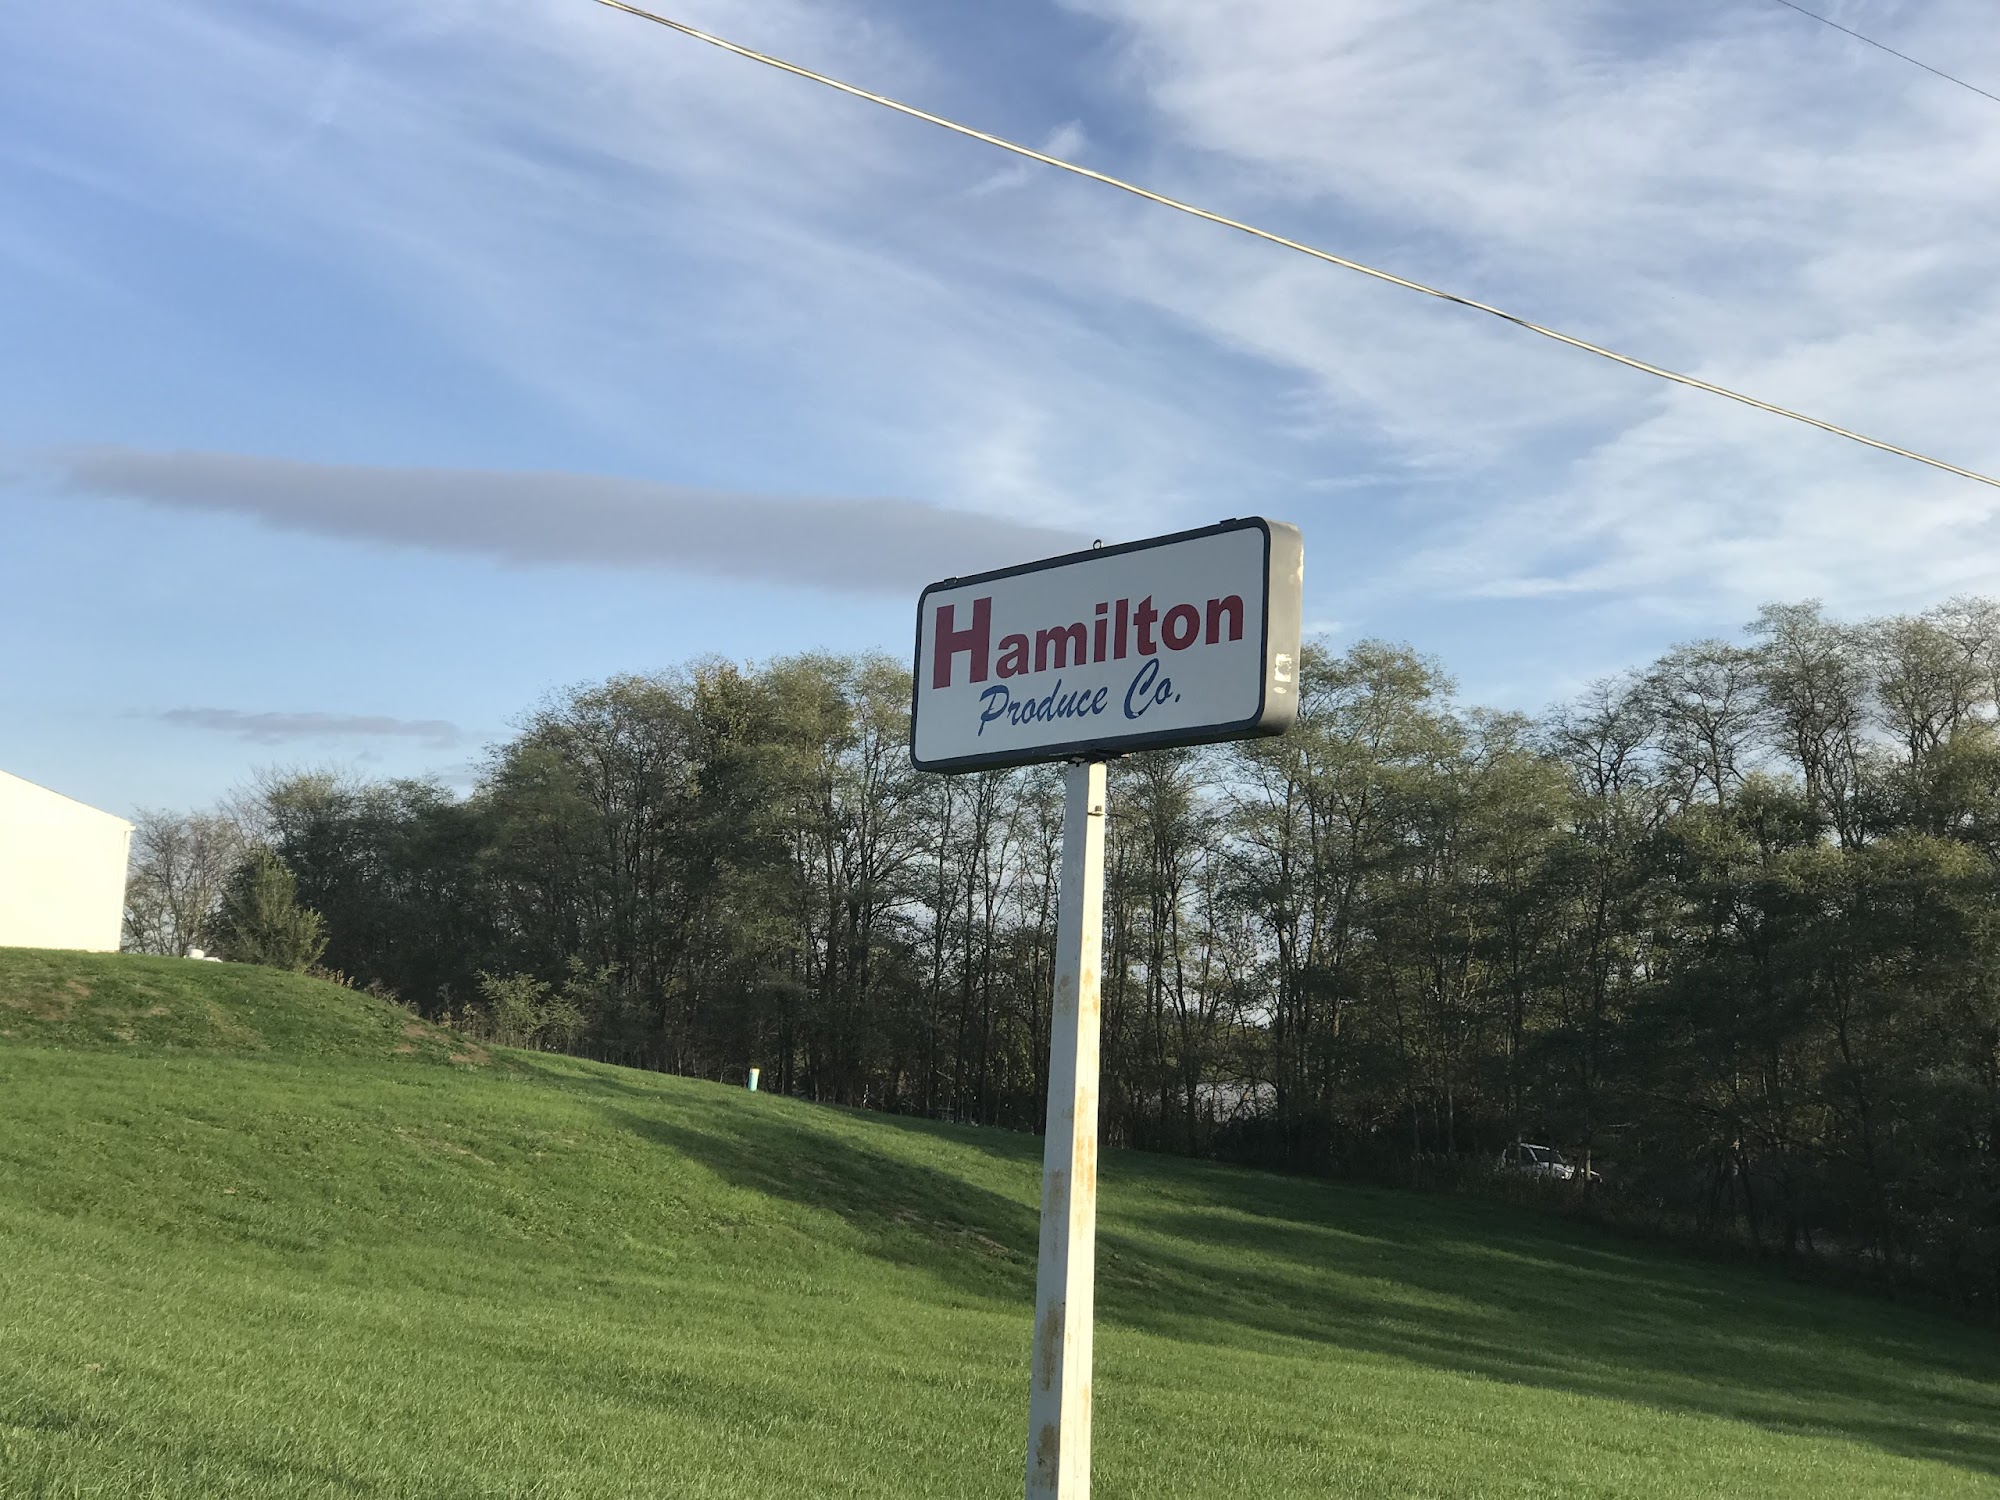 Hamilton Produce Co